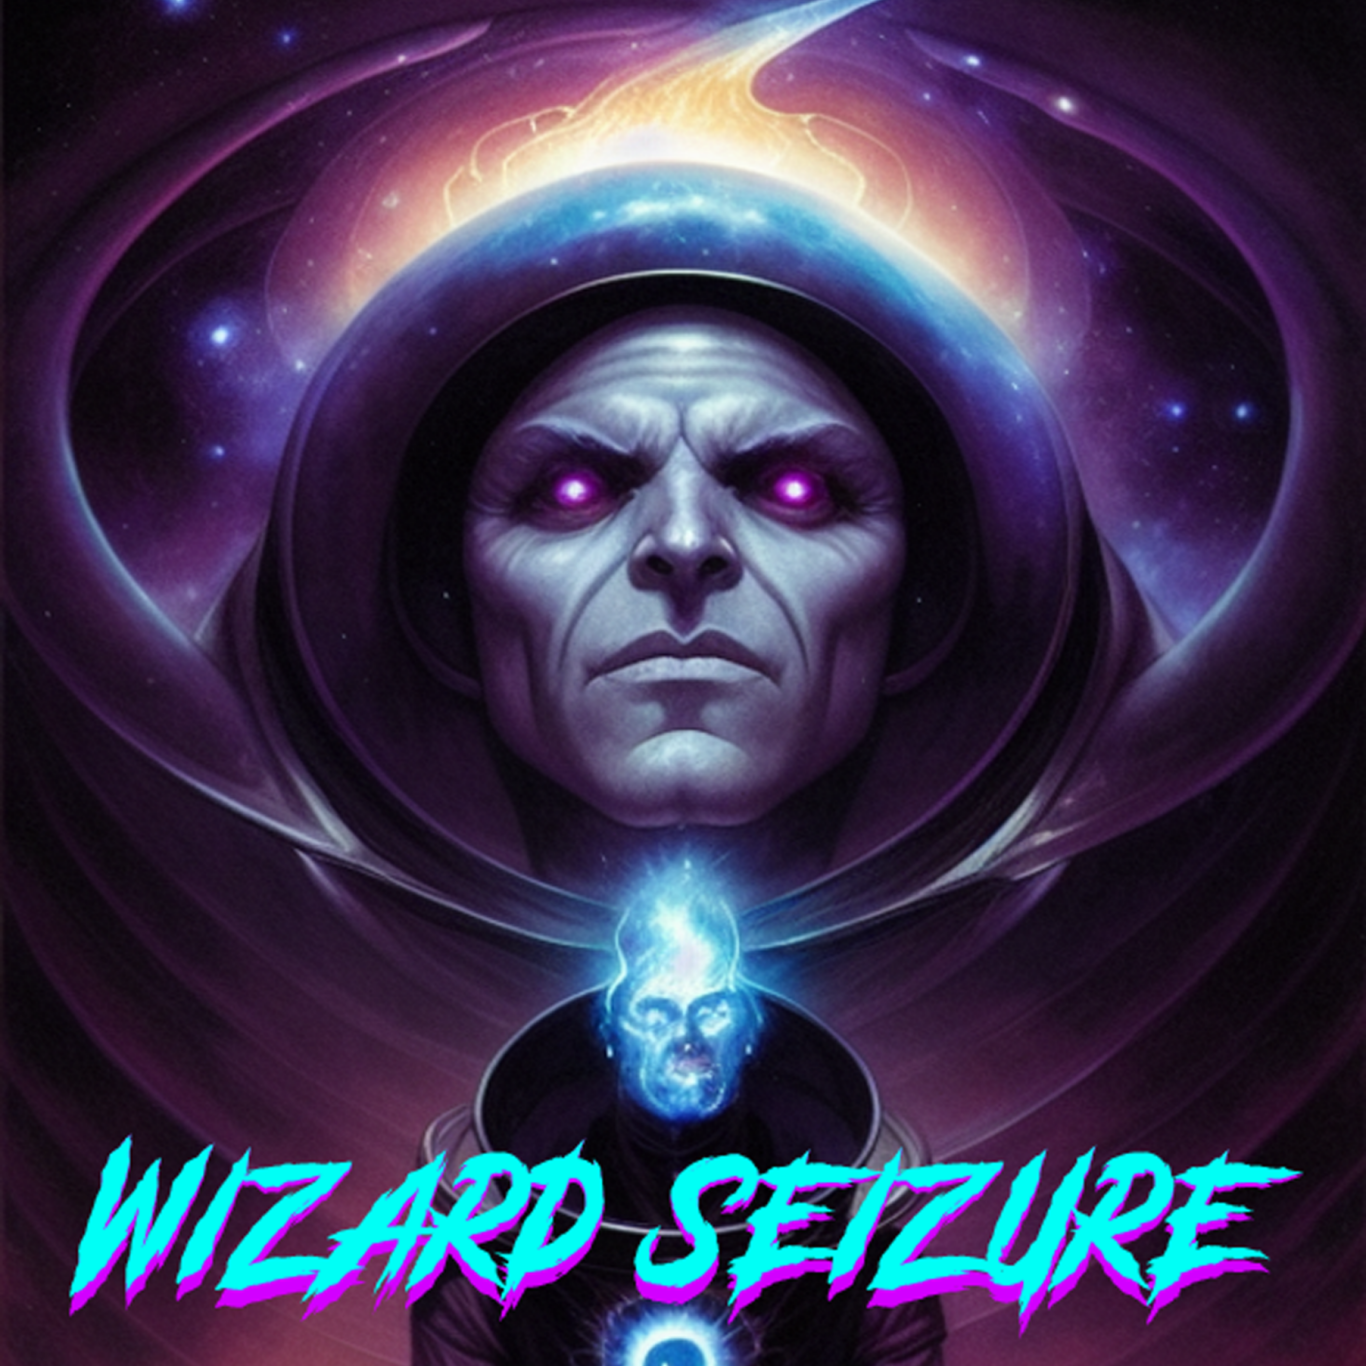 Wizard seizure t-shirts art prints cover art progressive metal